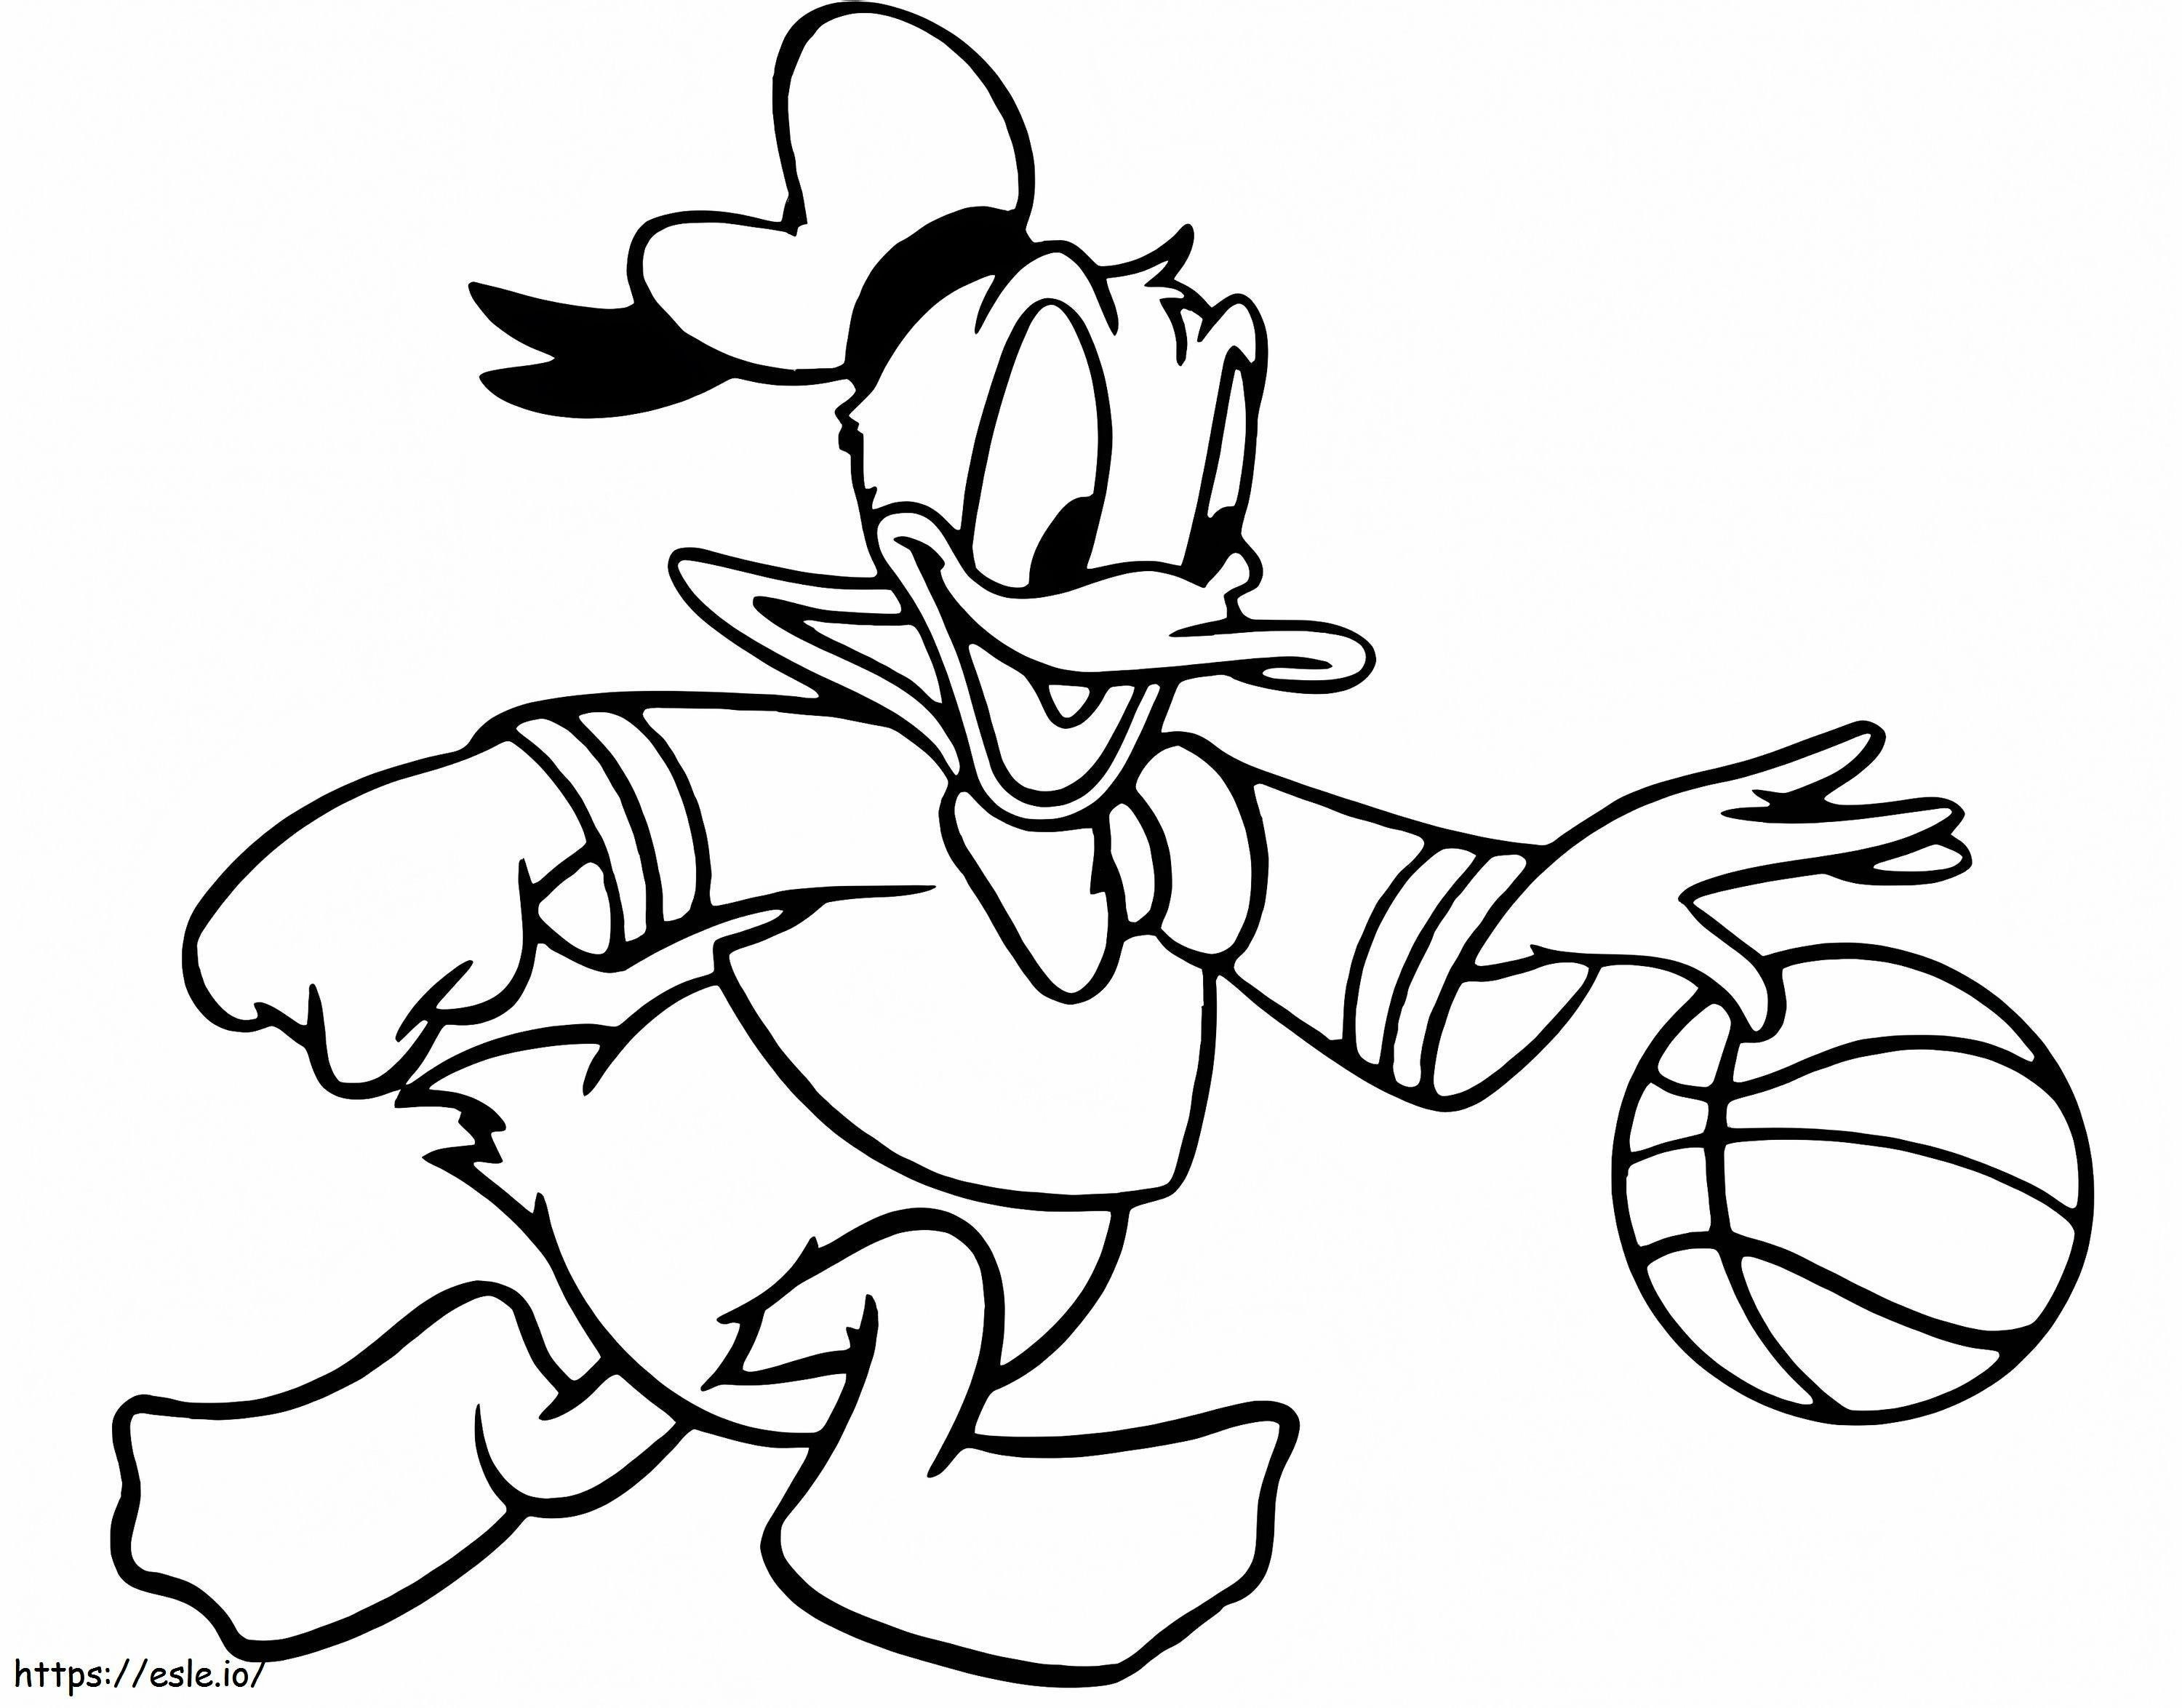 Pato Donald jugando baloncesto para colorear